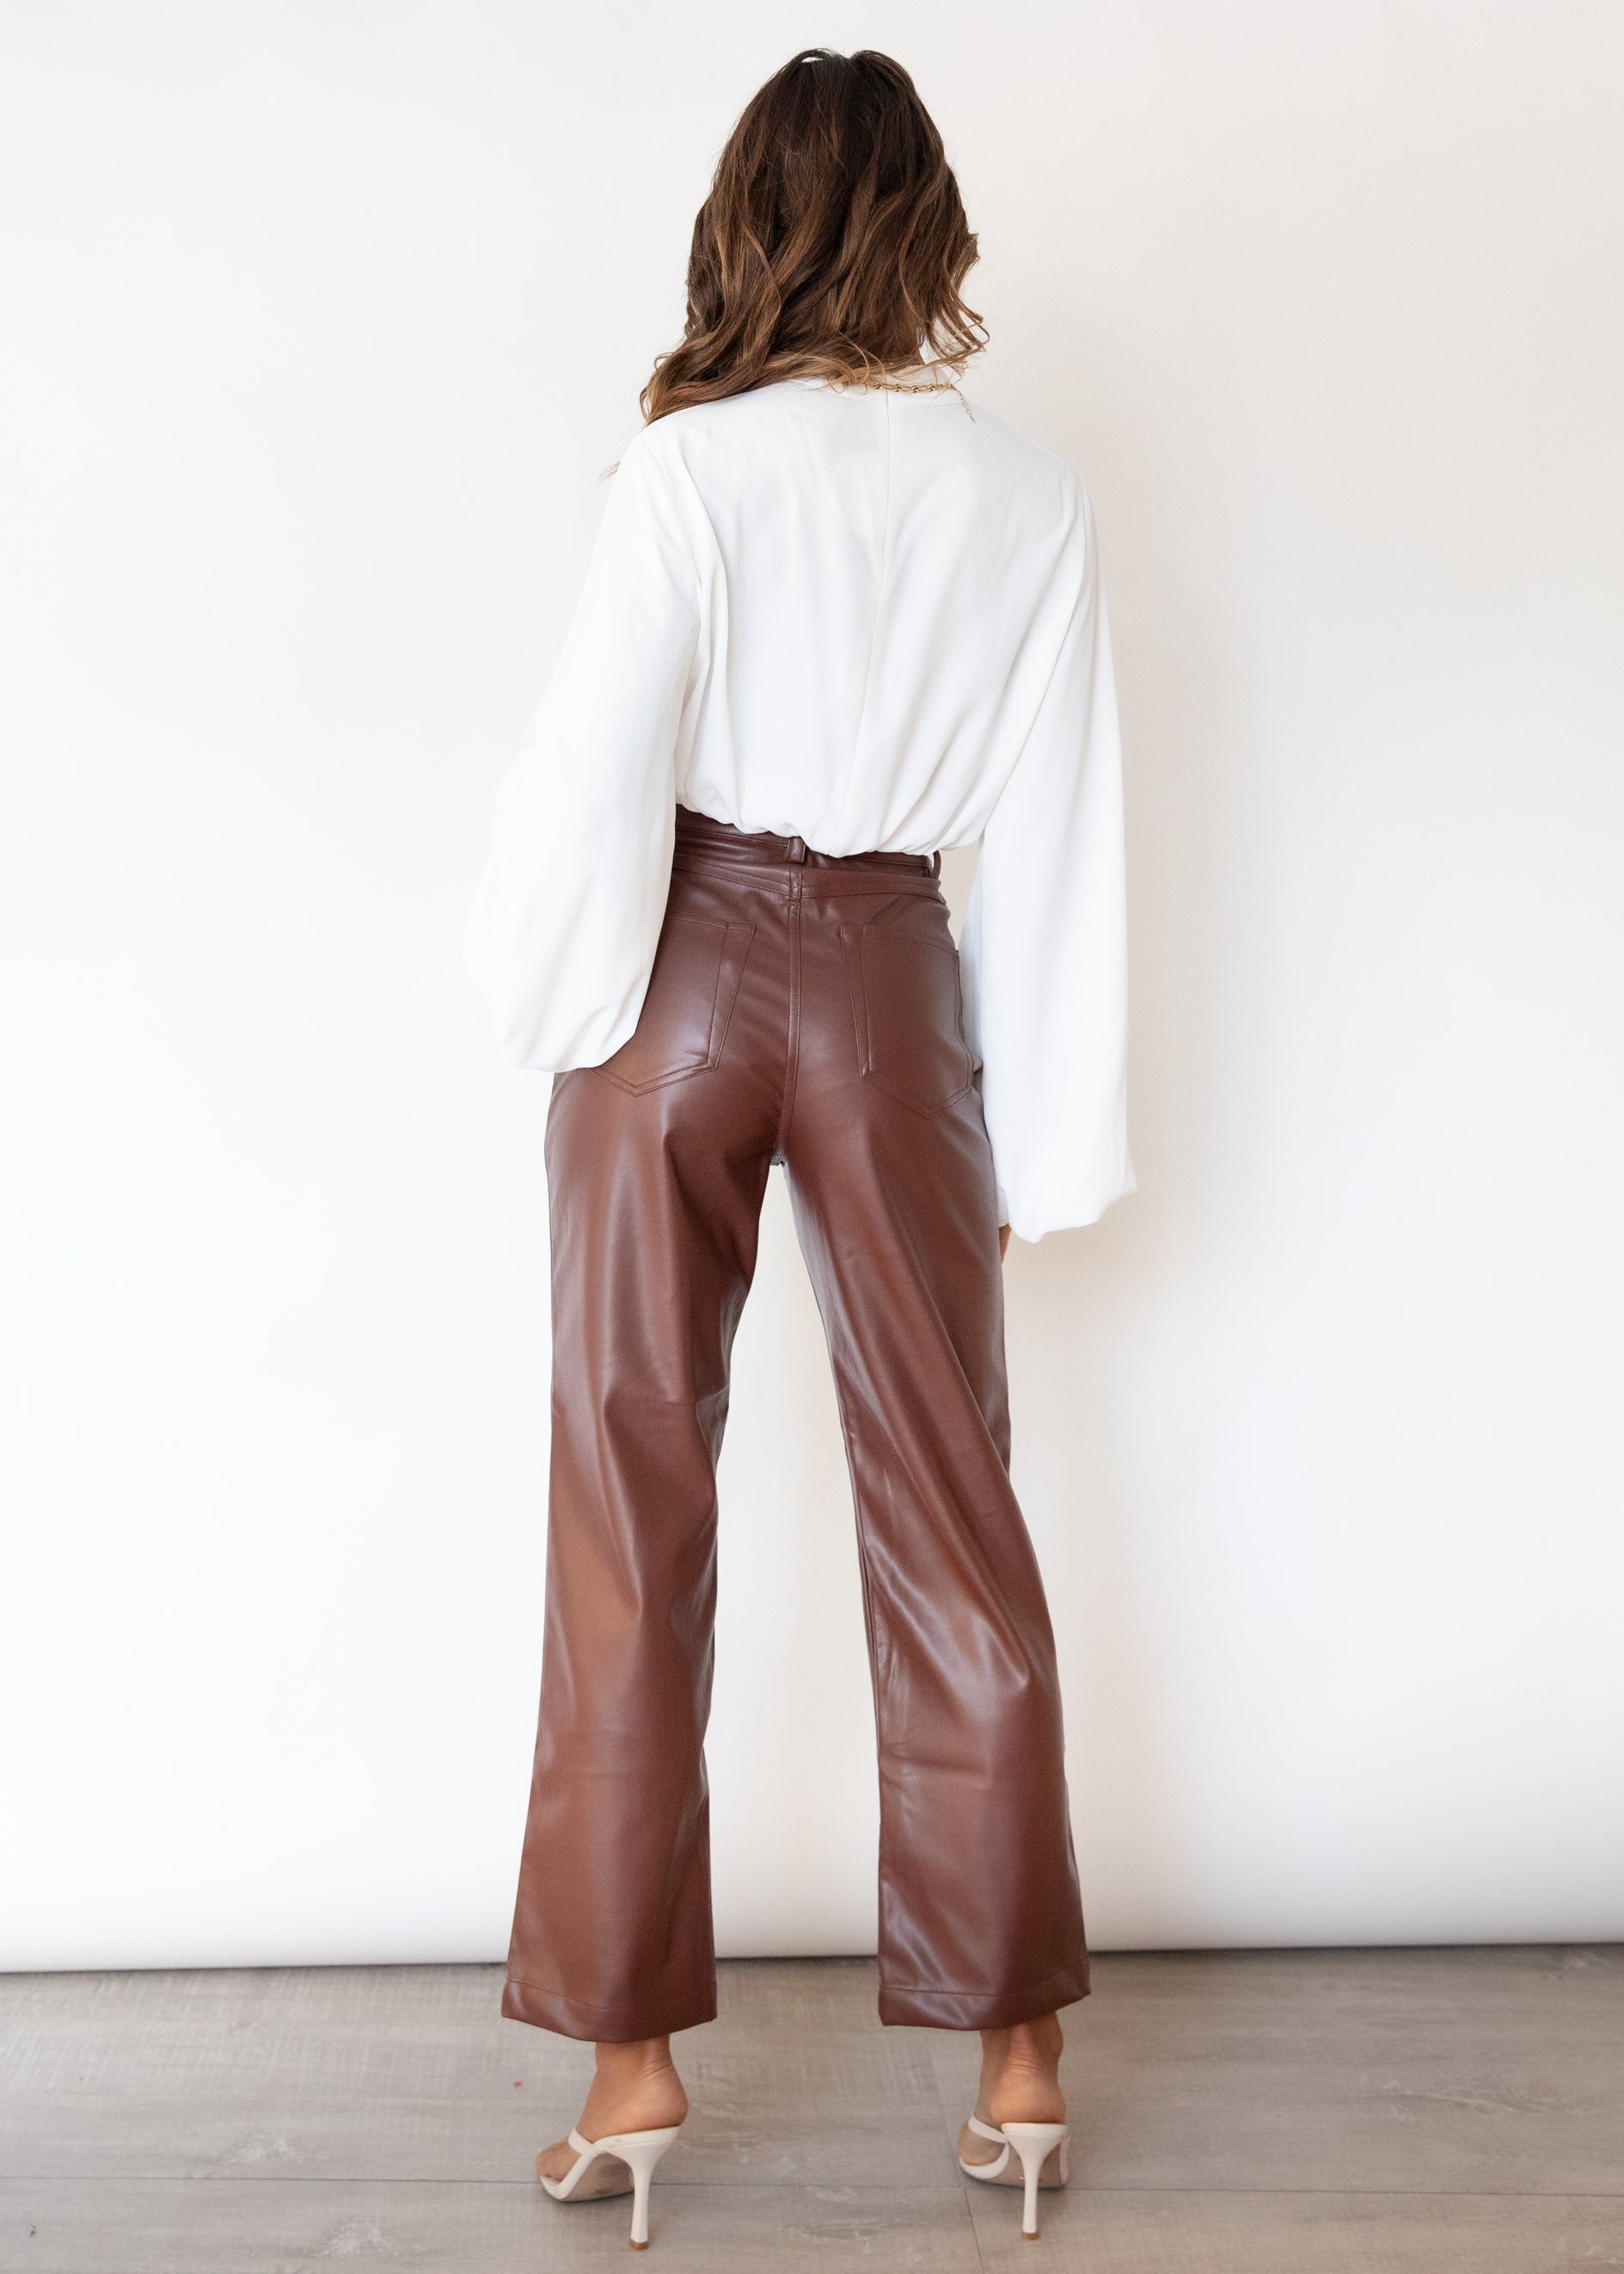 Jordan Leather Look Pants - Brown